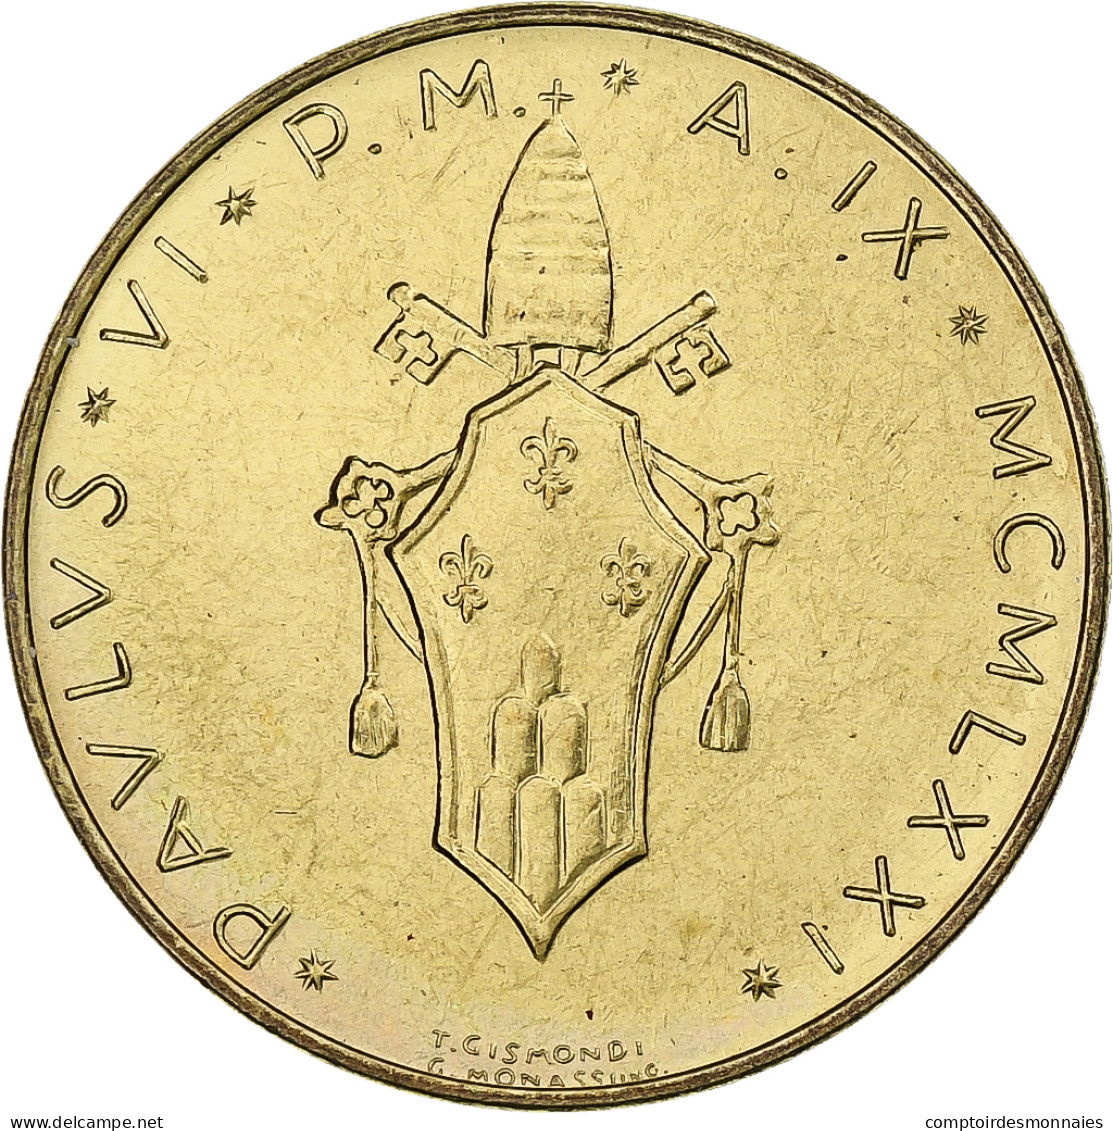 Vatican, Paul VI, 20 Lire, 1971 (Anno IX), Rome, Bronze-Aluminium, SPL+, KM:120 - Vatican